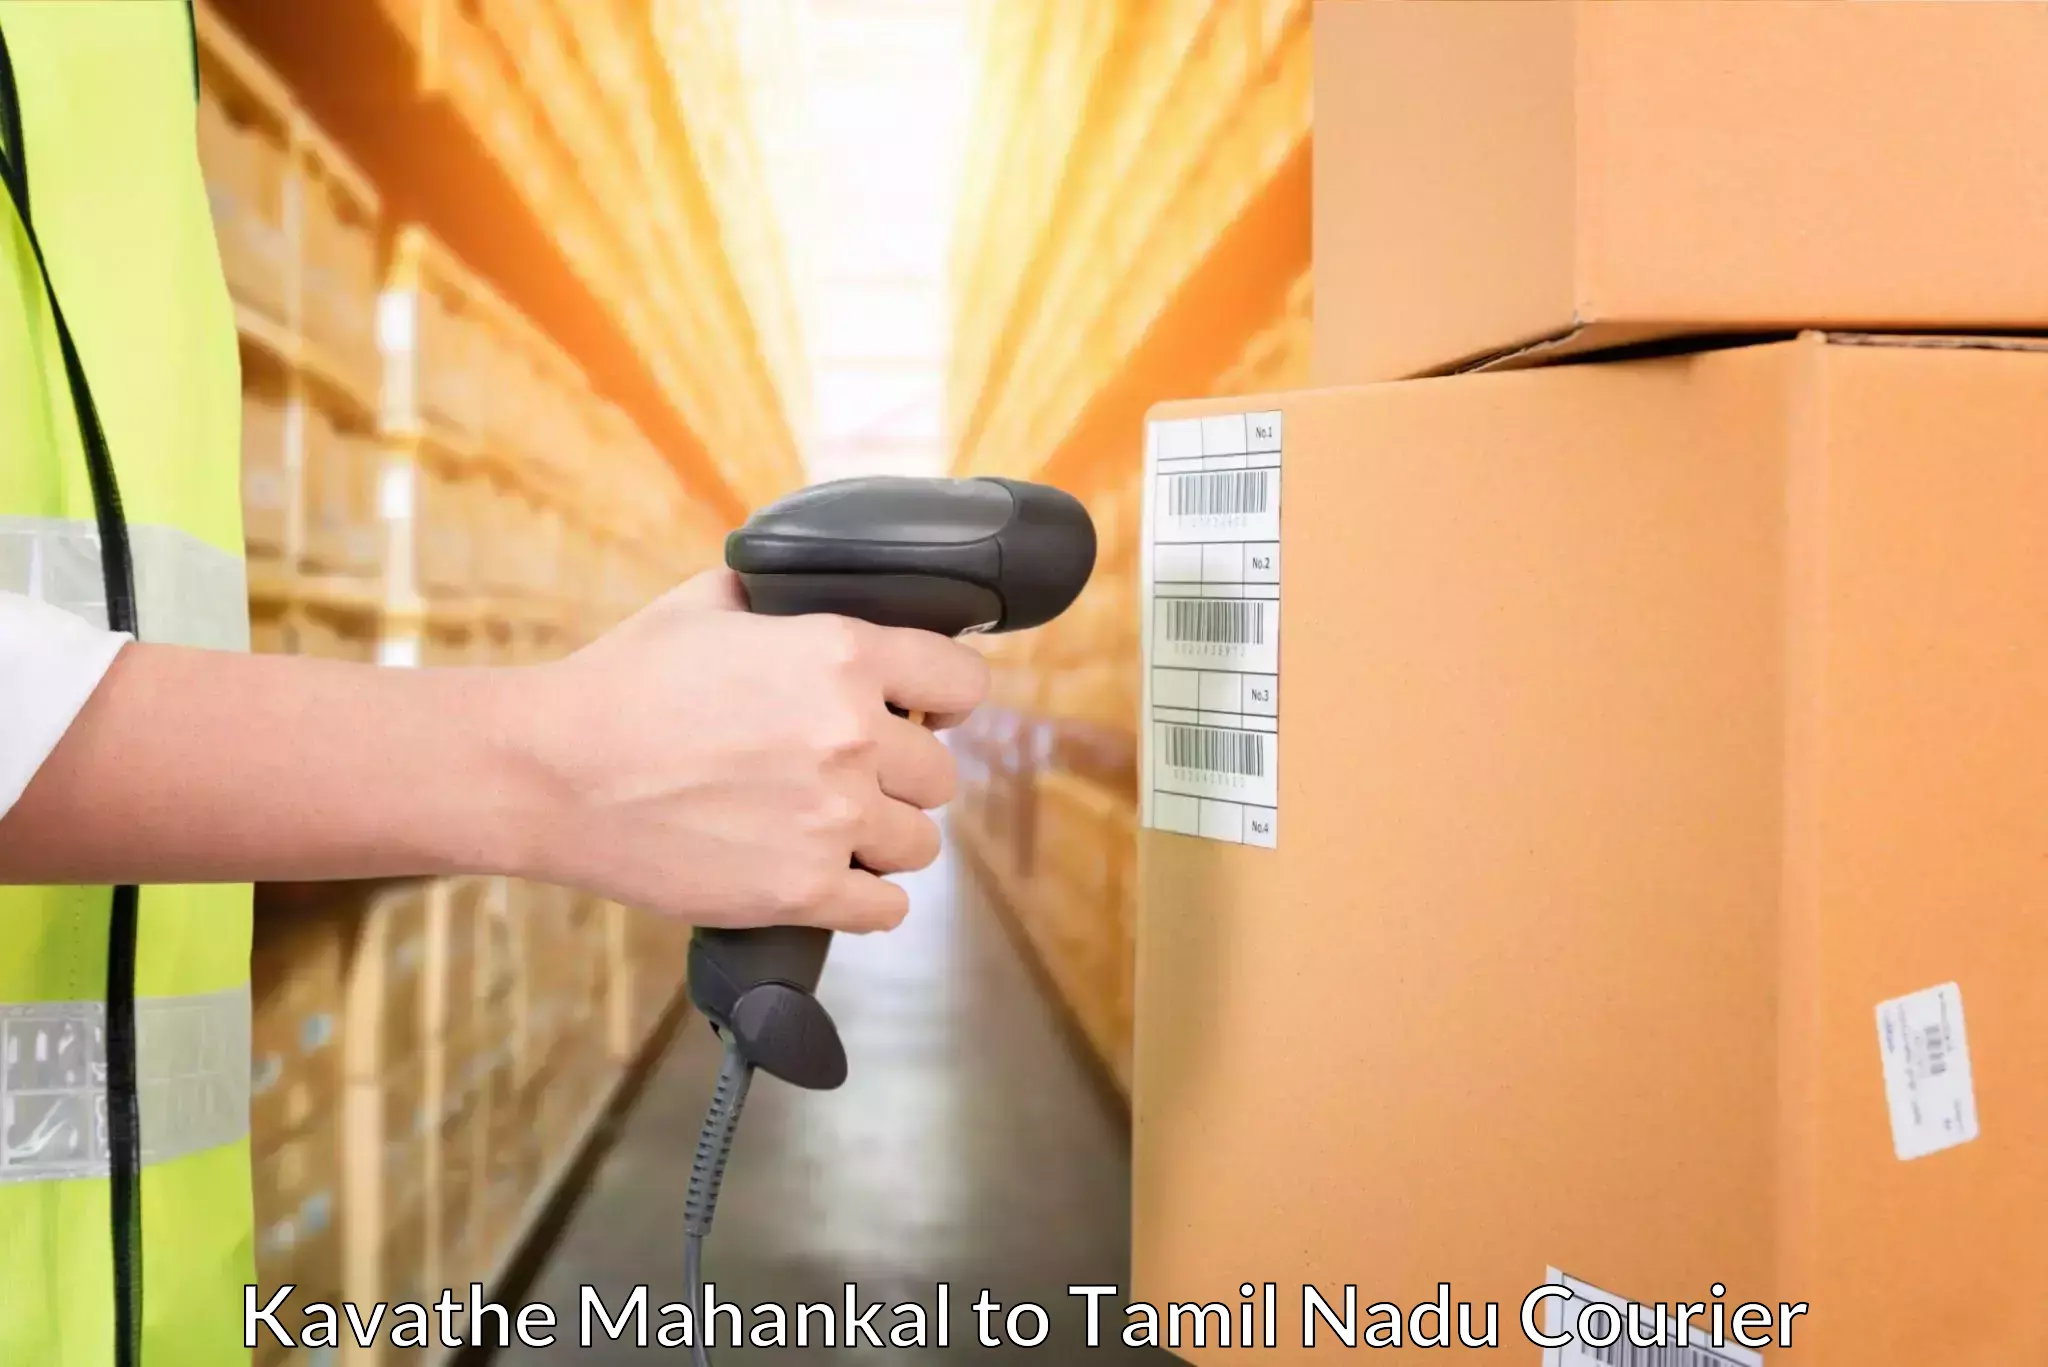 High-speed parcel service Kavathe Mahankal to Vallioor